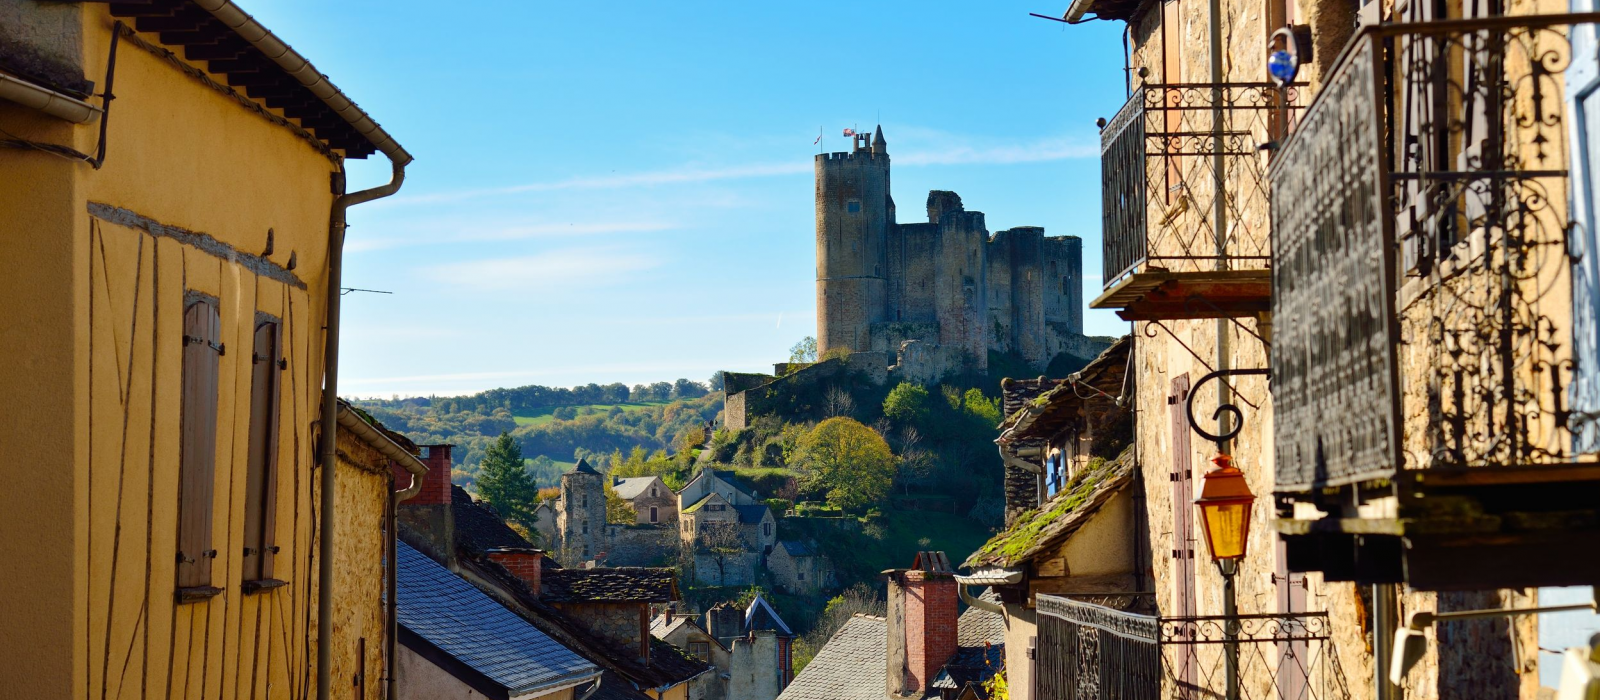 Les incontournables de la Vallée de l’Aveyron